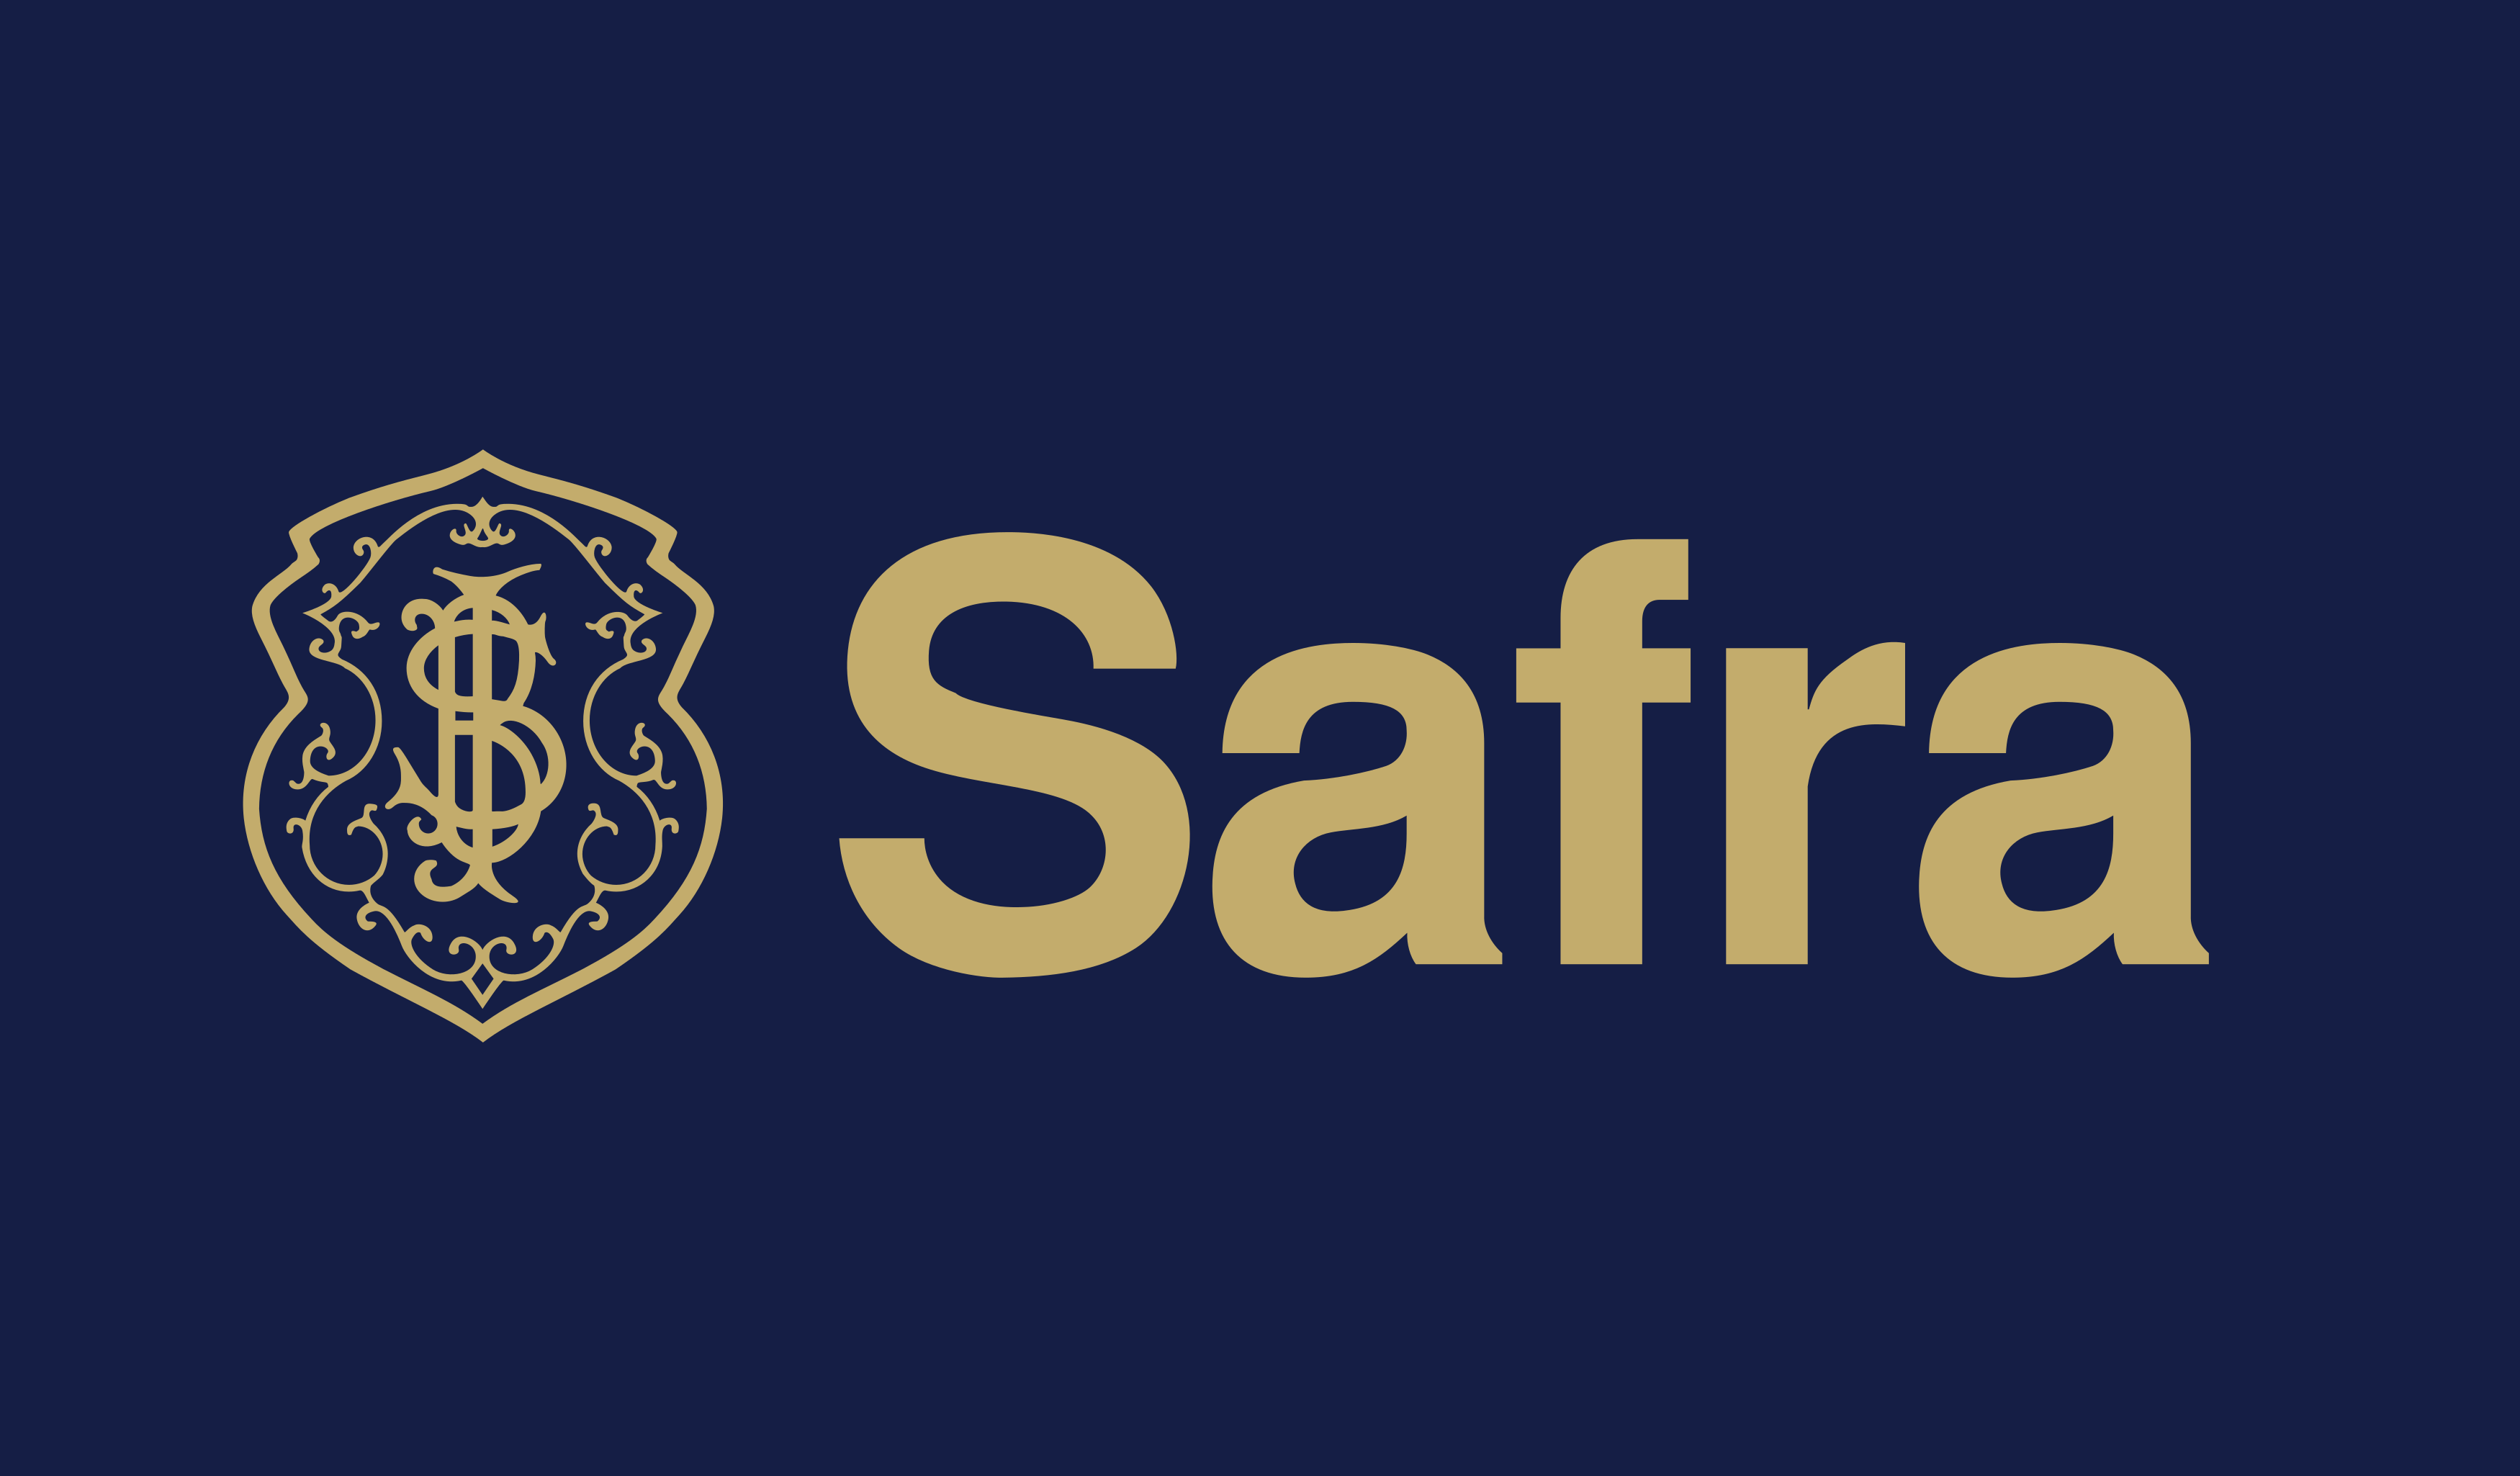 Safra Logo   Pluspng - Banco Safra, Transparent background PNG HD thumbnail